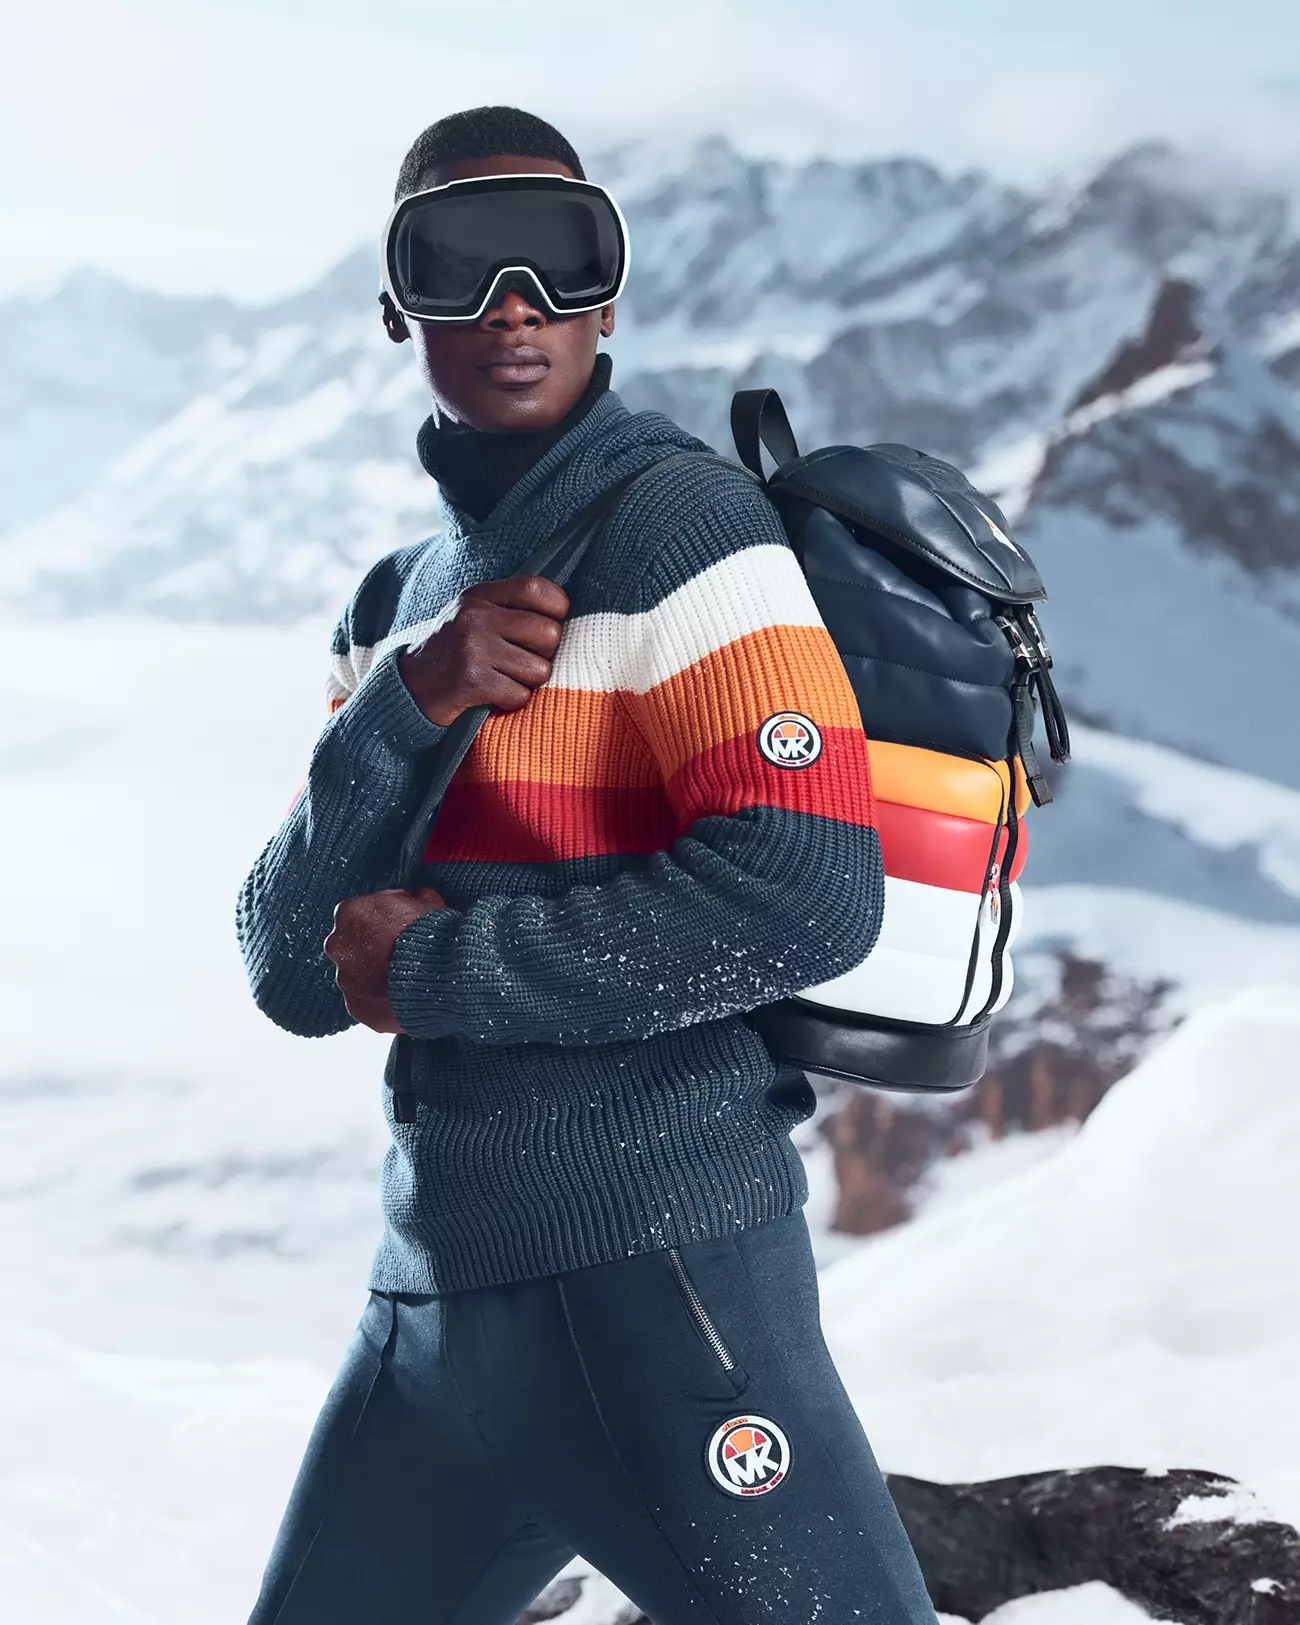 Michael Kors x ellesse Ski Capsule